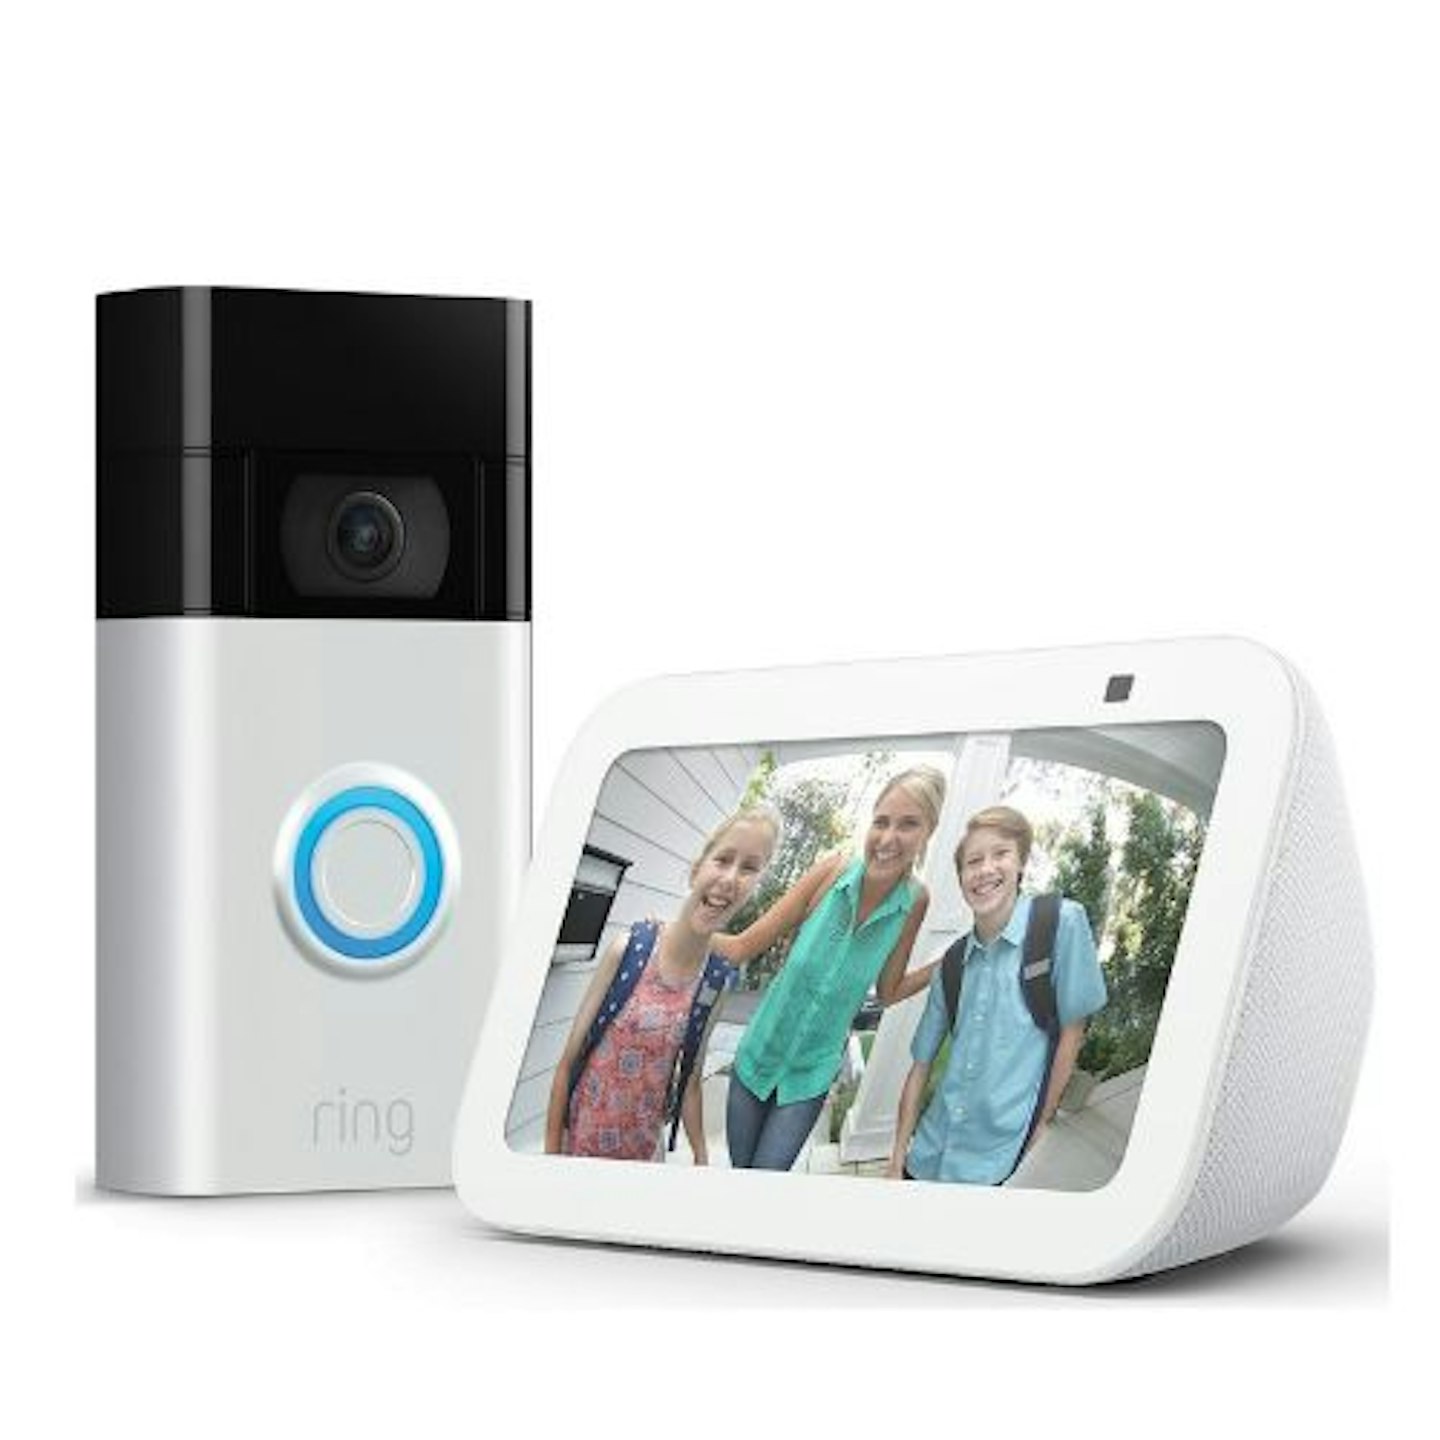 Video Doorbell with Amazon Echo Show 5